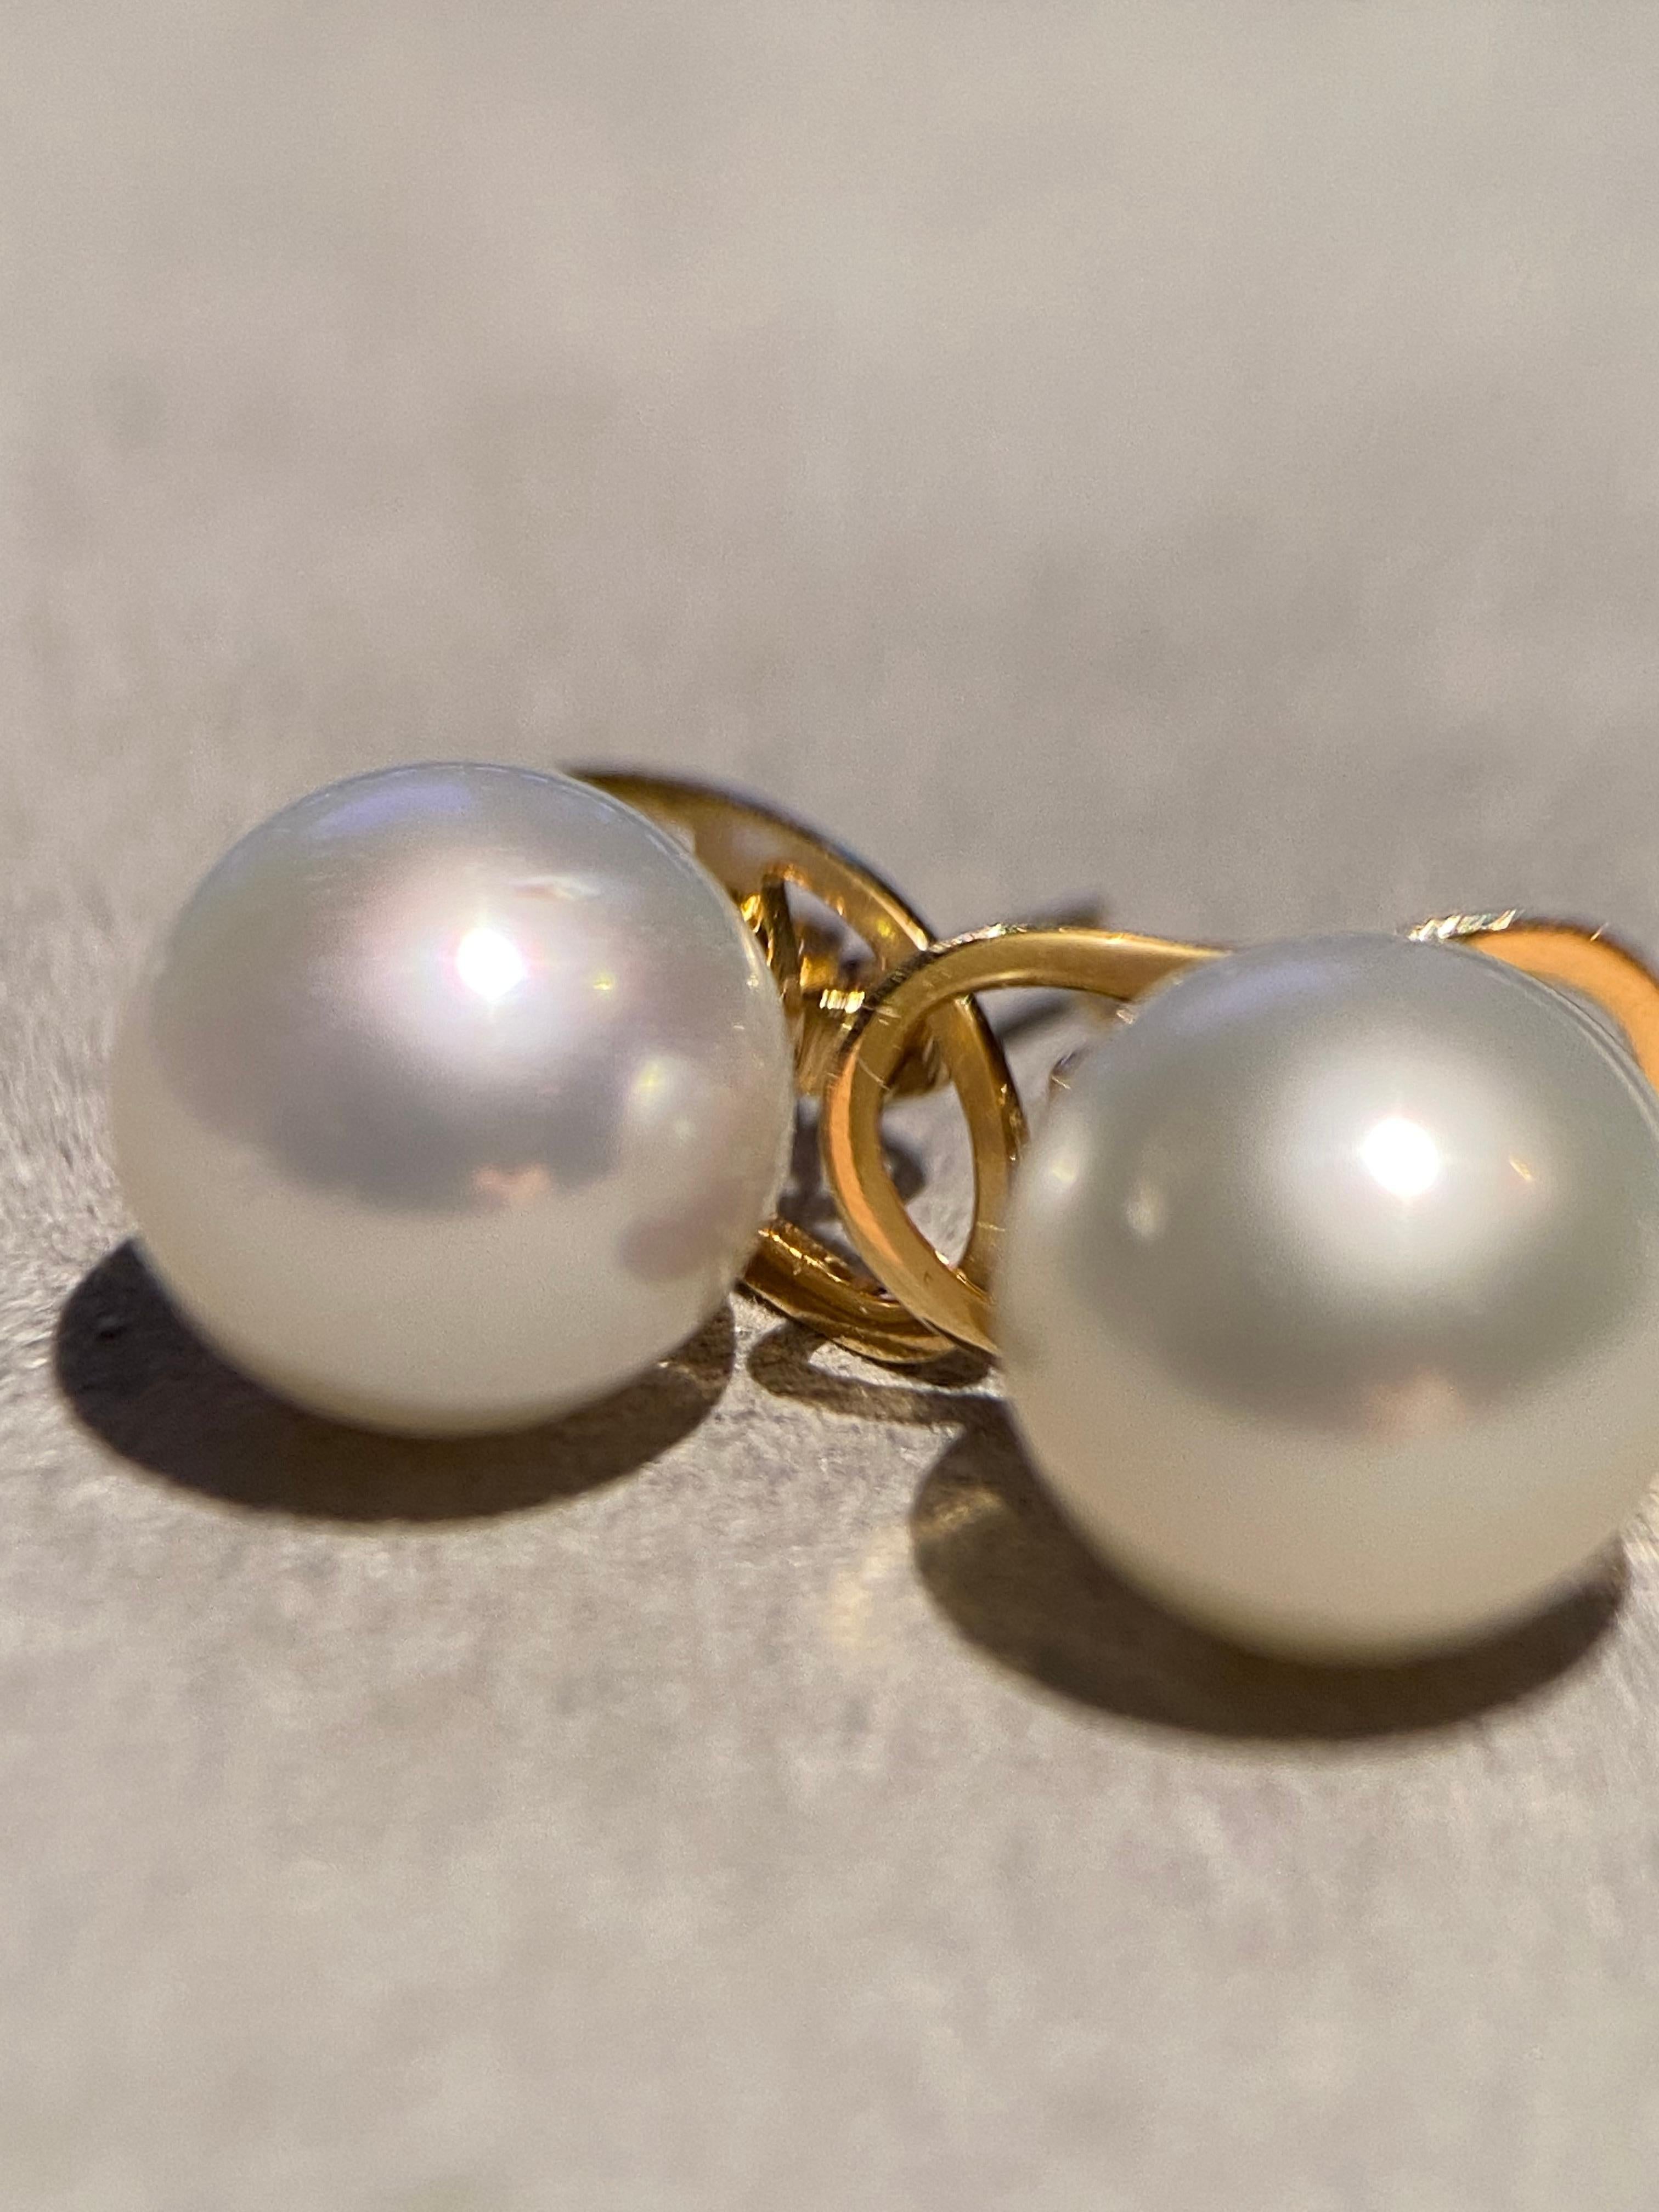 Ein Paar australische Südseeperlen von 9-10 mm. Die Perlen sind rund in der Form mit sehr kleinen Oberflächenfehlern und Unvollkommenheit. Die Perlen sind hochglänzend mit grünem und rosafarbenem Deckstein. Der Ohrstecker ist in 18 Karat Gelbgold